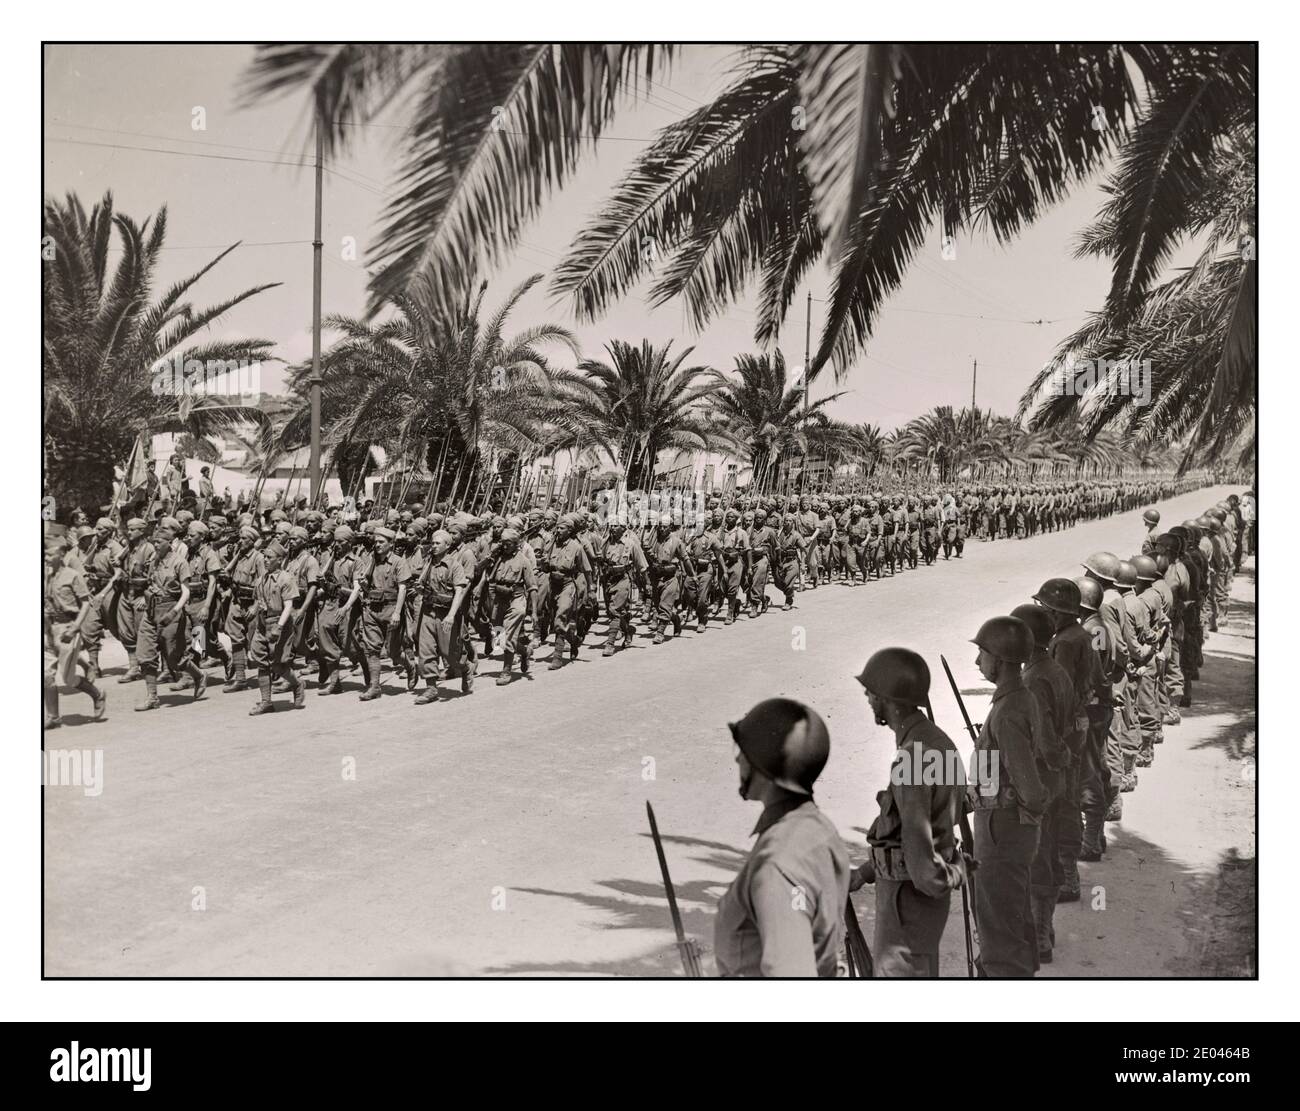 TUNIS 1943 WW2 Afrique du Nord propagande de la victoire photo Tunis, Tunisie des soldats français défilent dans le défilé de la victoire allié le long de l'avenue Gambetta. Les soldats américains debout à la parade sont au premier plan. États-Unis. Office of War information. États-Unis. Armée. Corps de signal. 1943 mai 20. - Guerre mondiale, 1939-1945--personnel militaire--Français--Tunisie--Tunis - défilés et cérémonies militaires--Tunisie--Tunis--1940-1950. Axis éjecté de l'Afrique du Nord 1943 photo de Jack Collins pour le corps américain des transmissions de l'armée. Banque D'Images